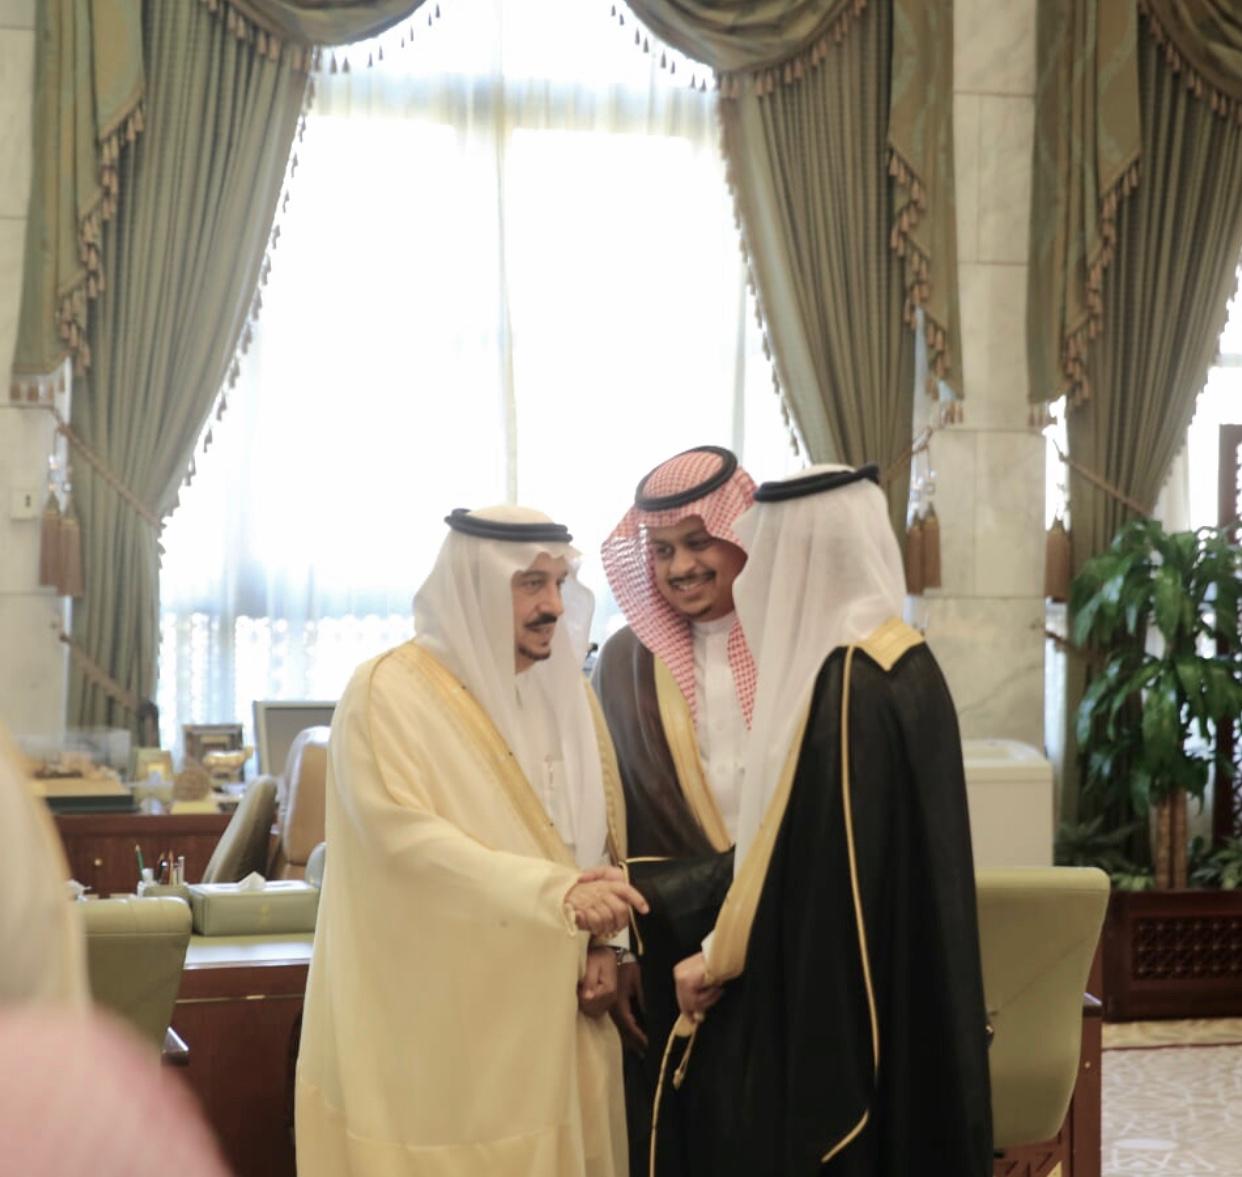 استقبال أمير الرياض صاحب السمو الملكي الأمير فيصل بن بندر بن عبد العزيز آل سعود لمدير العلامة التجارية الاستاذ صالح المري